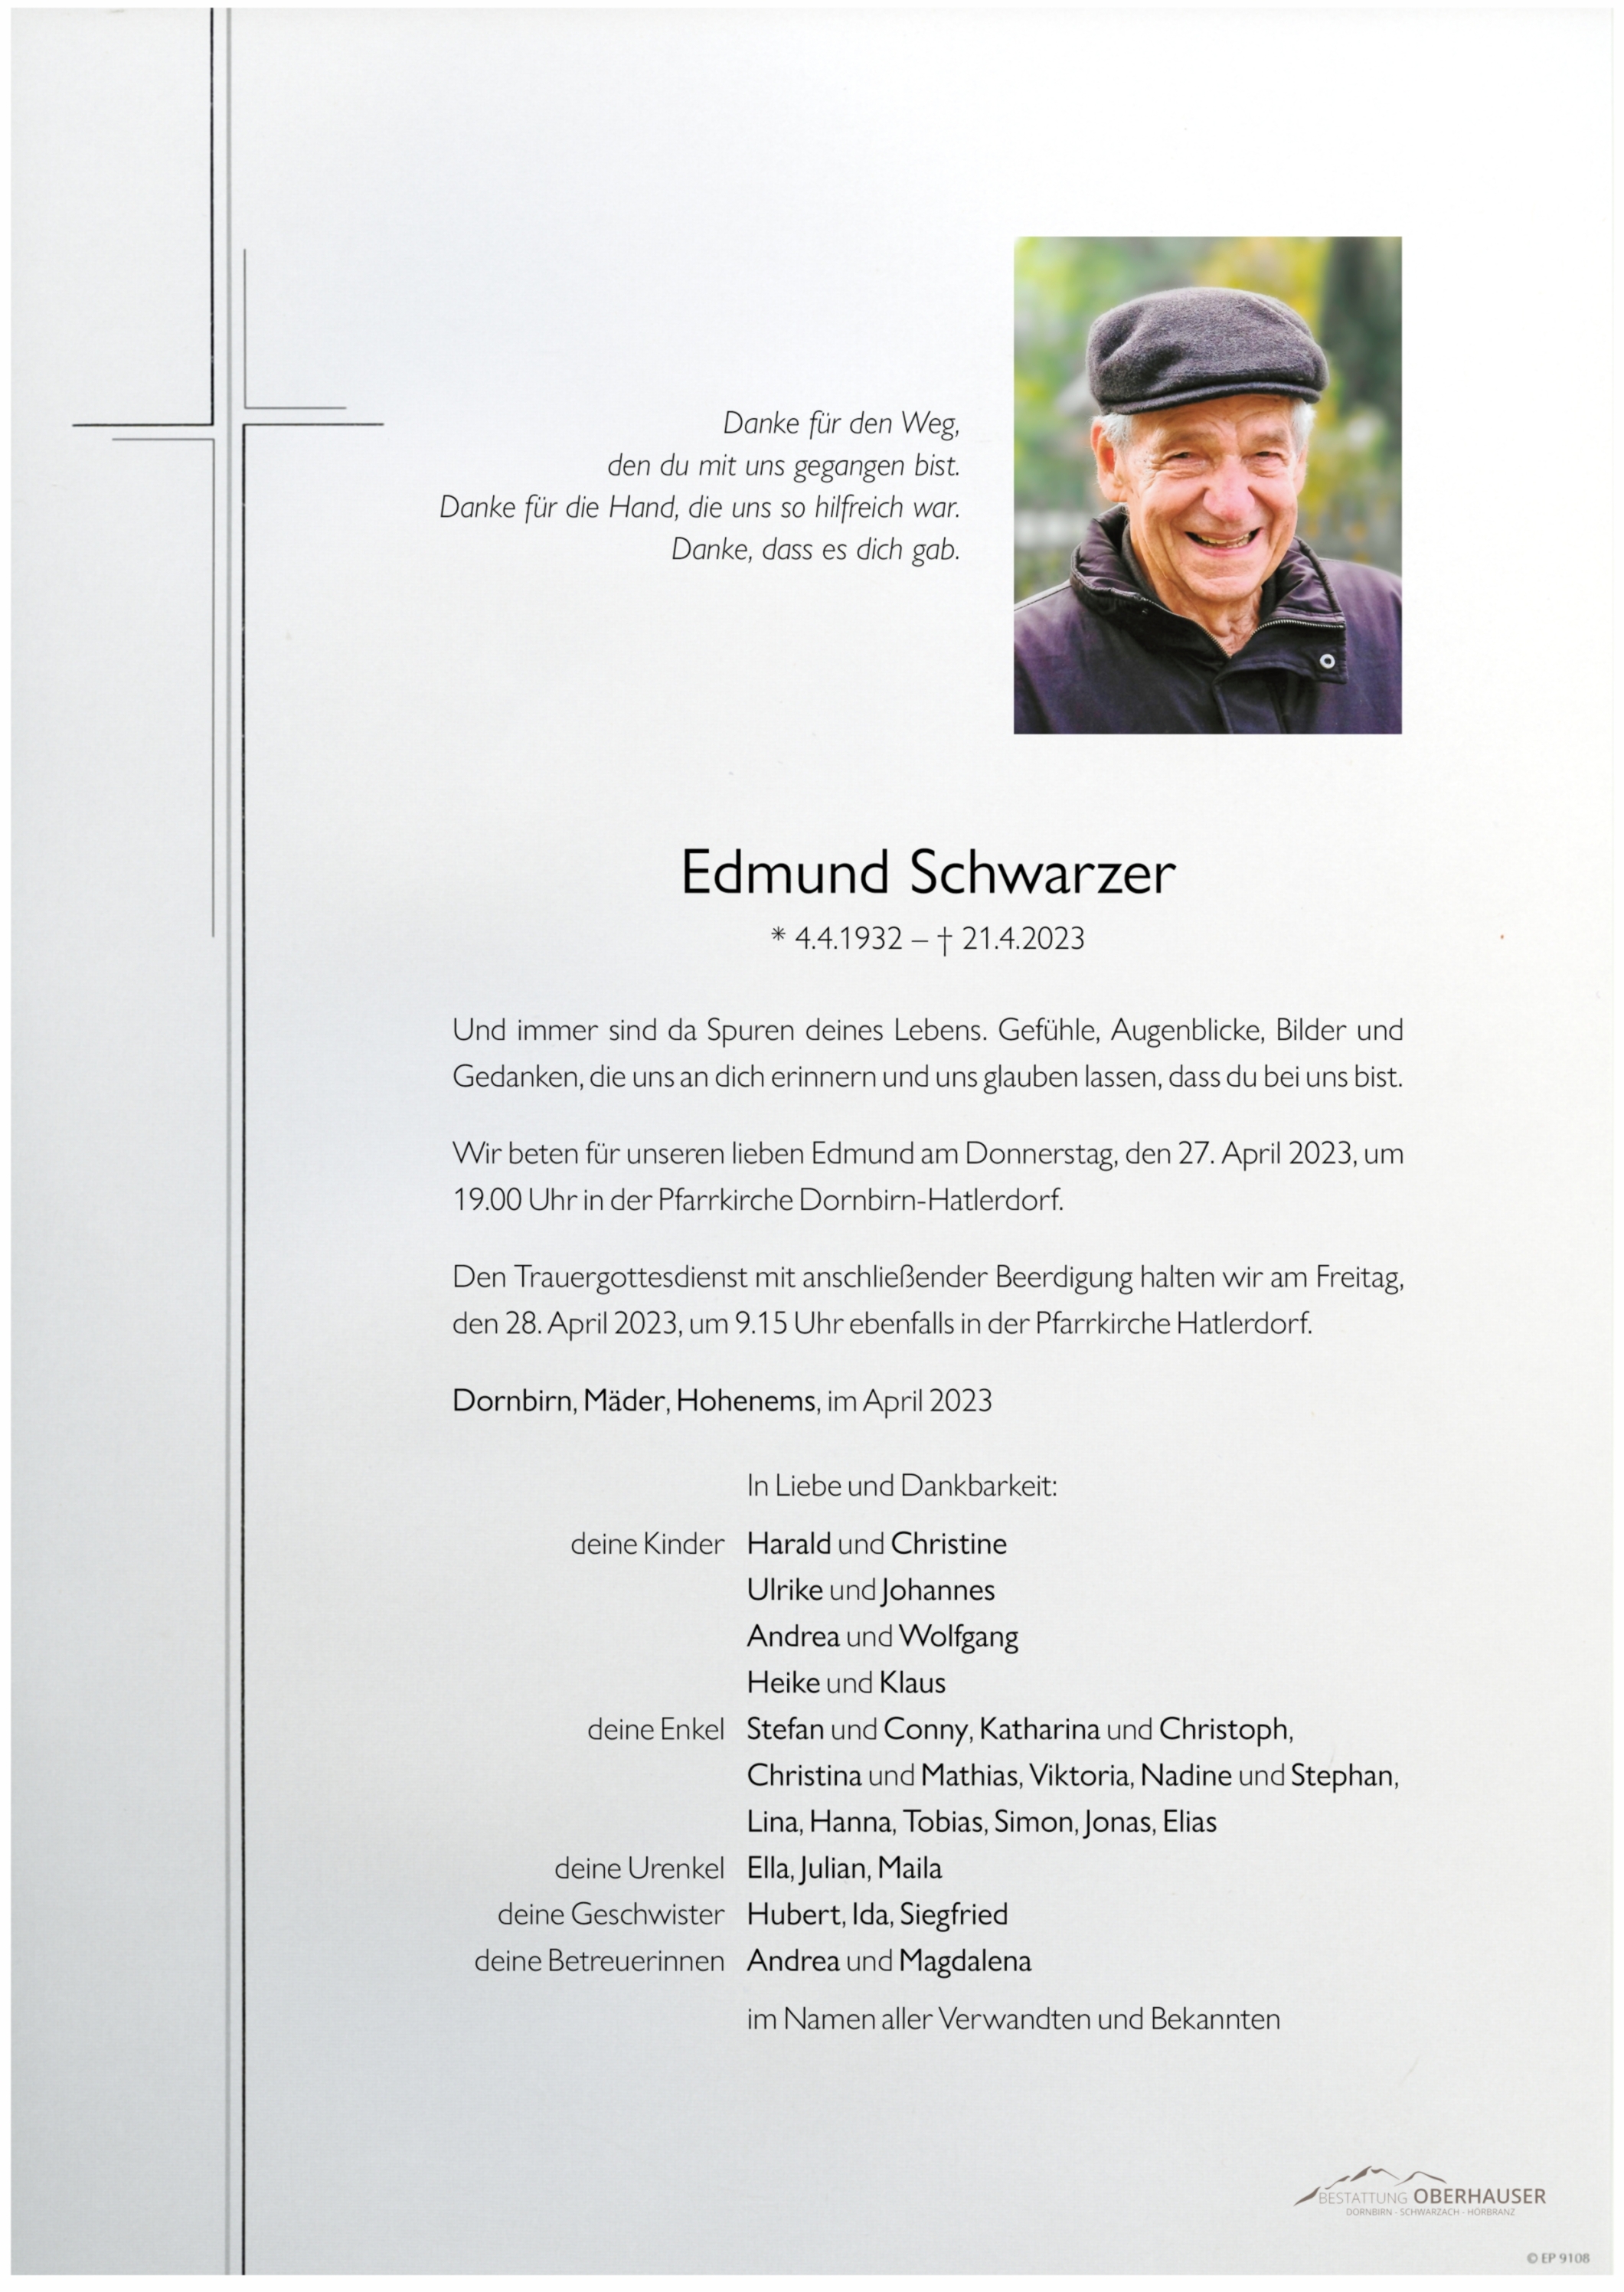 Edmund Schwarzer